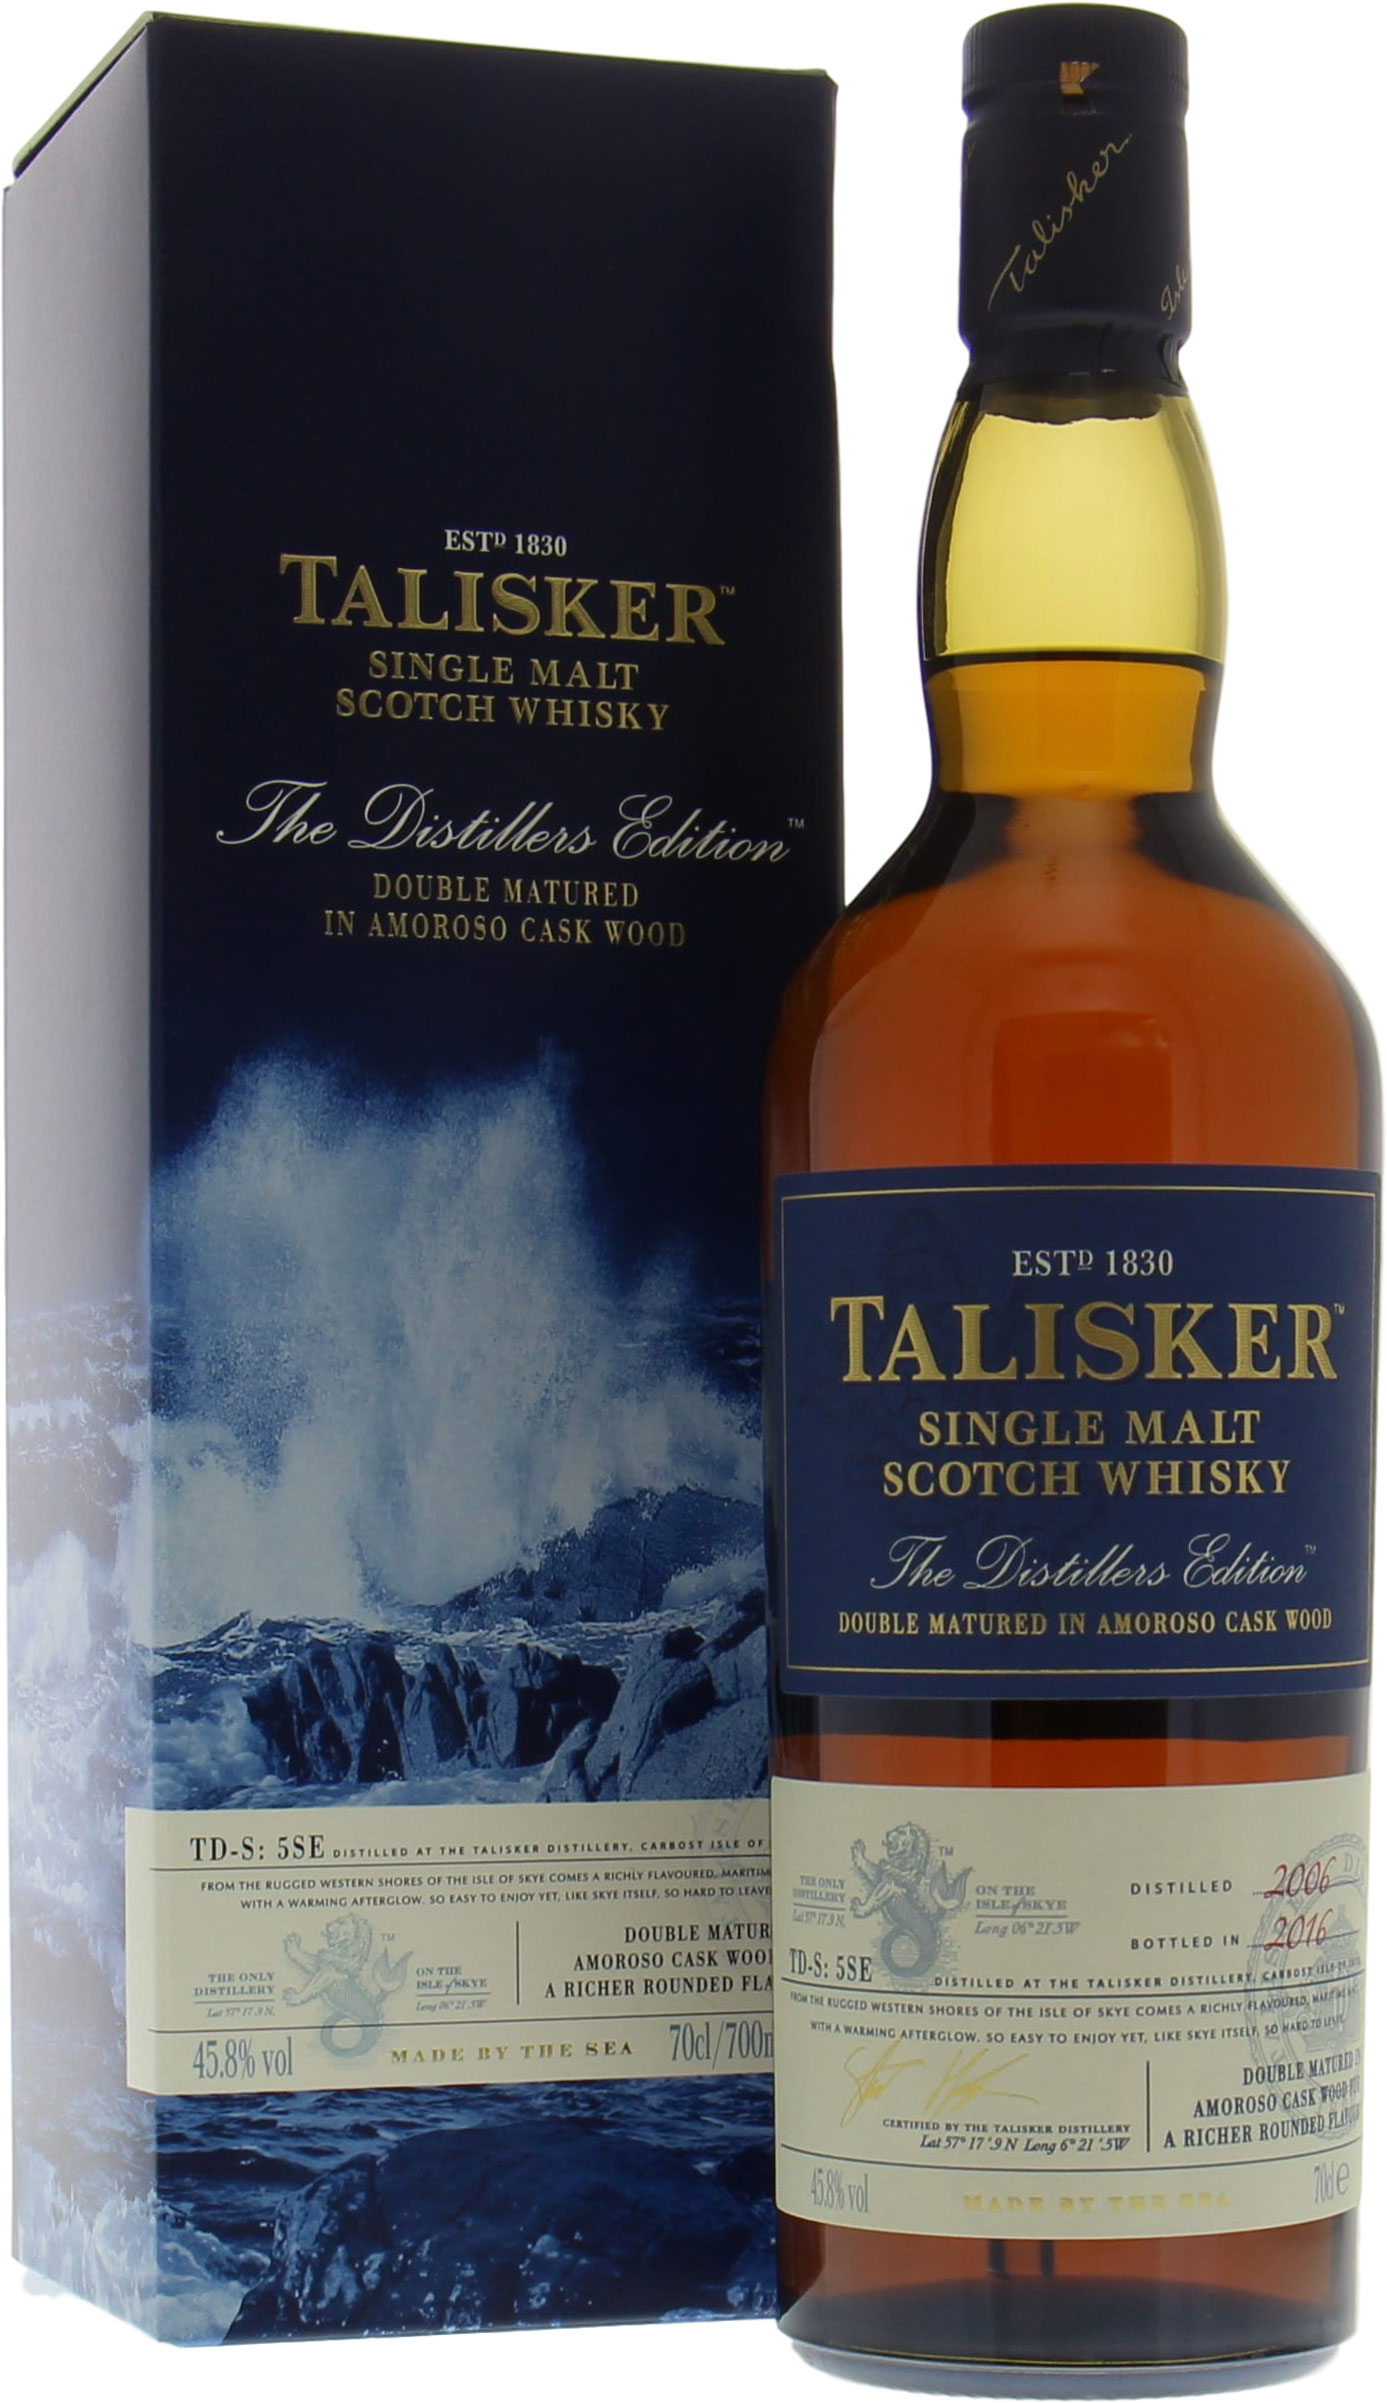 Talisker - Distillers Edition 2016 45.8% nv